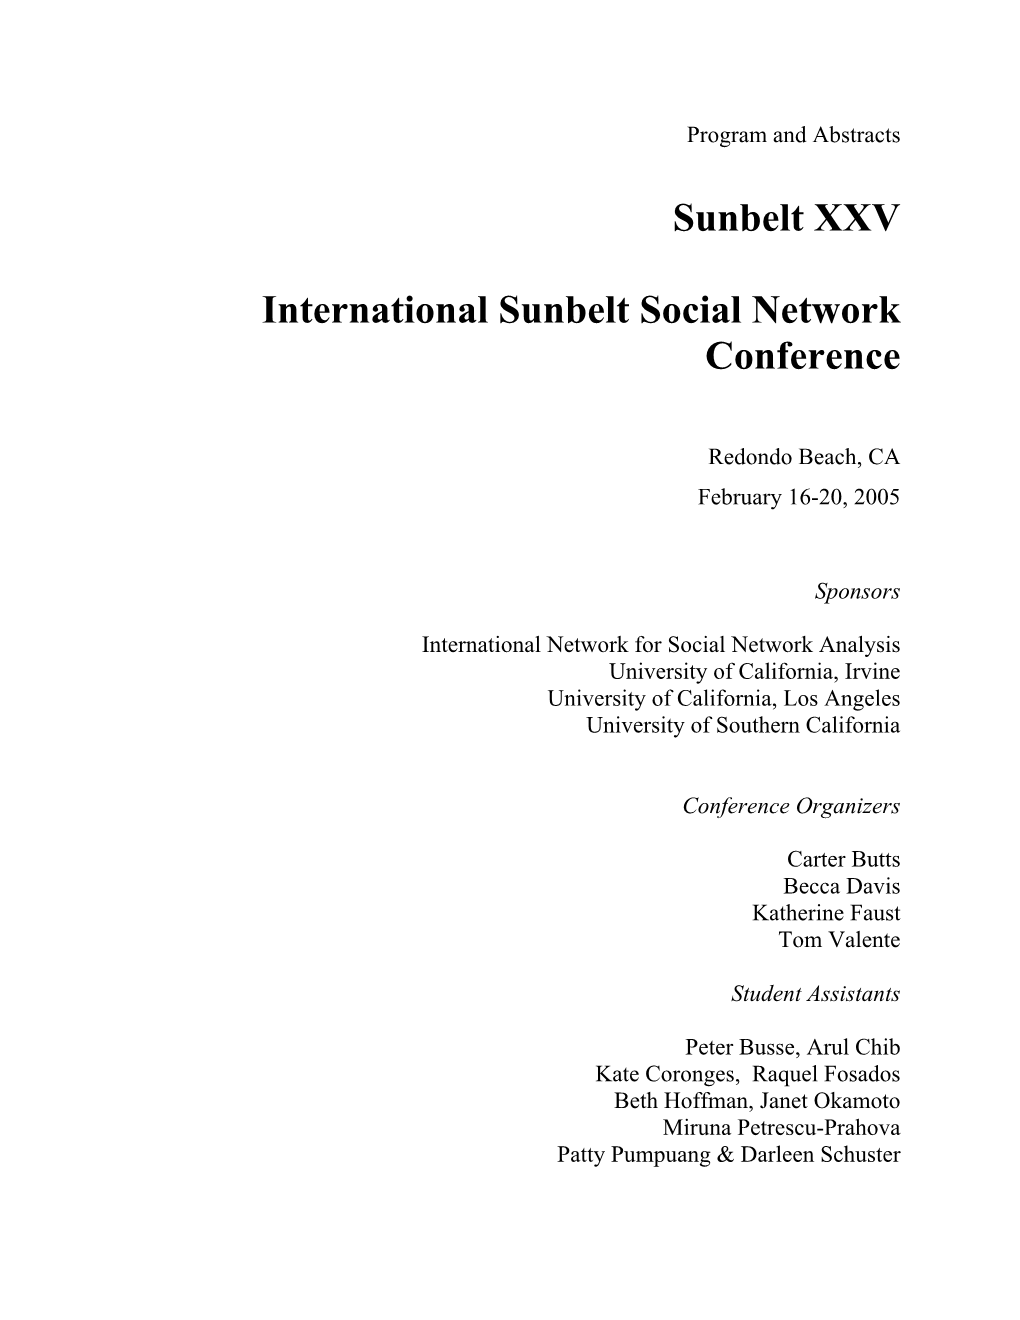 Sunbelt XXV International Sunbelt Social Network Conference